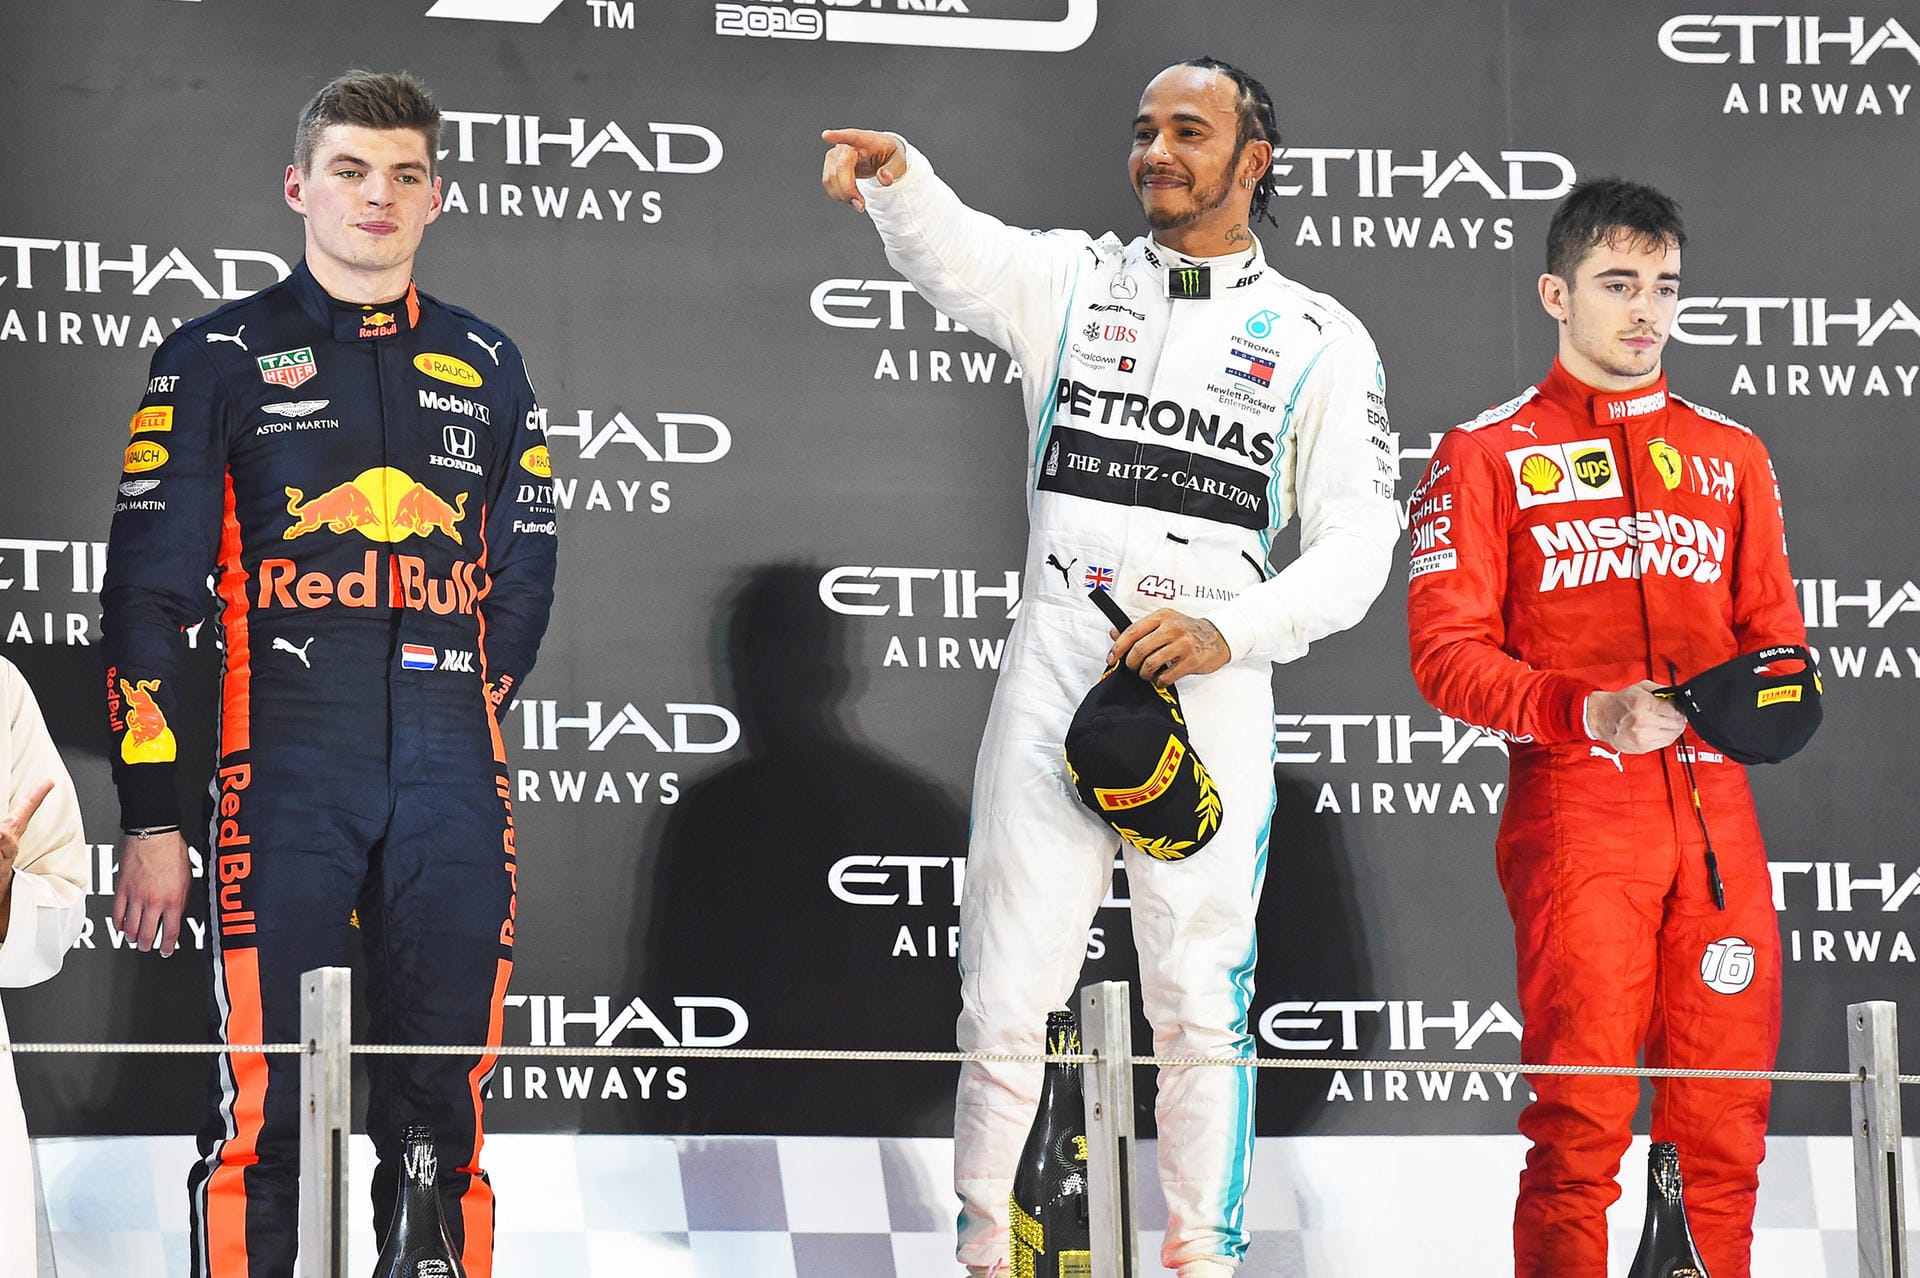 Weltmeister Lewis Hamilton zeigte beim letzten Rennen der Saison erneut eine Glanzleistung. Der Brite belegte den ersten Platz des GP von Abu Dhabi und ließ seine Konkurrenten alt aussehen. Die Pressestimmen.